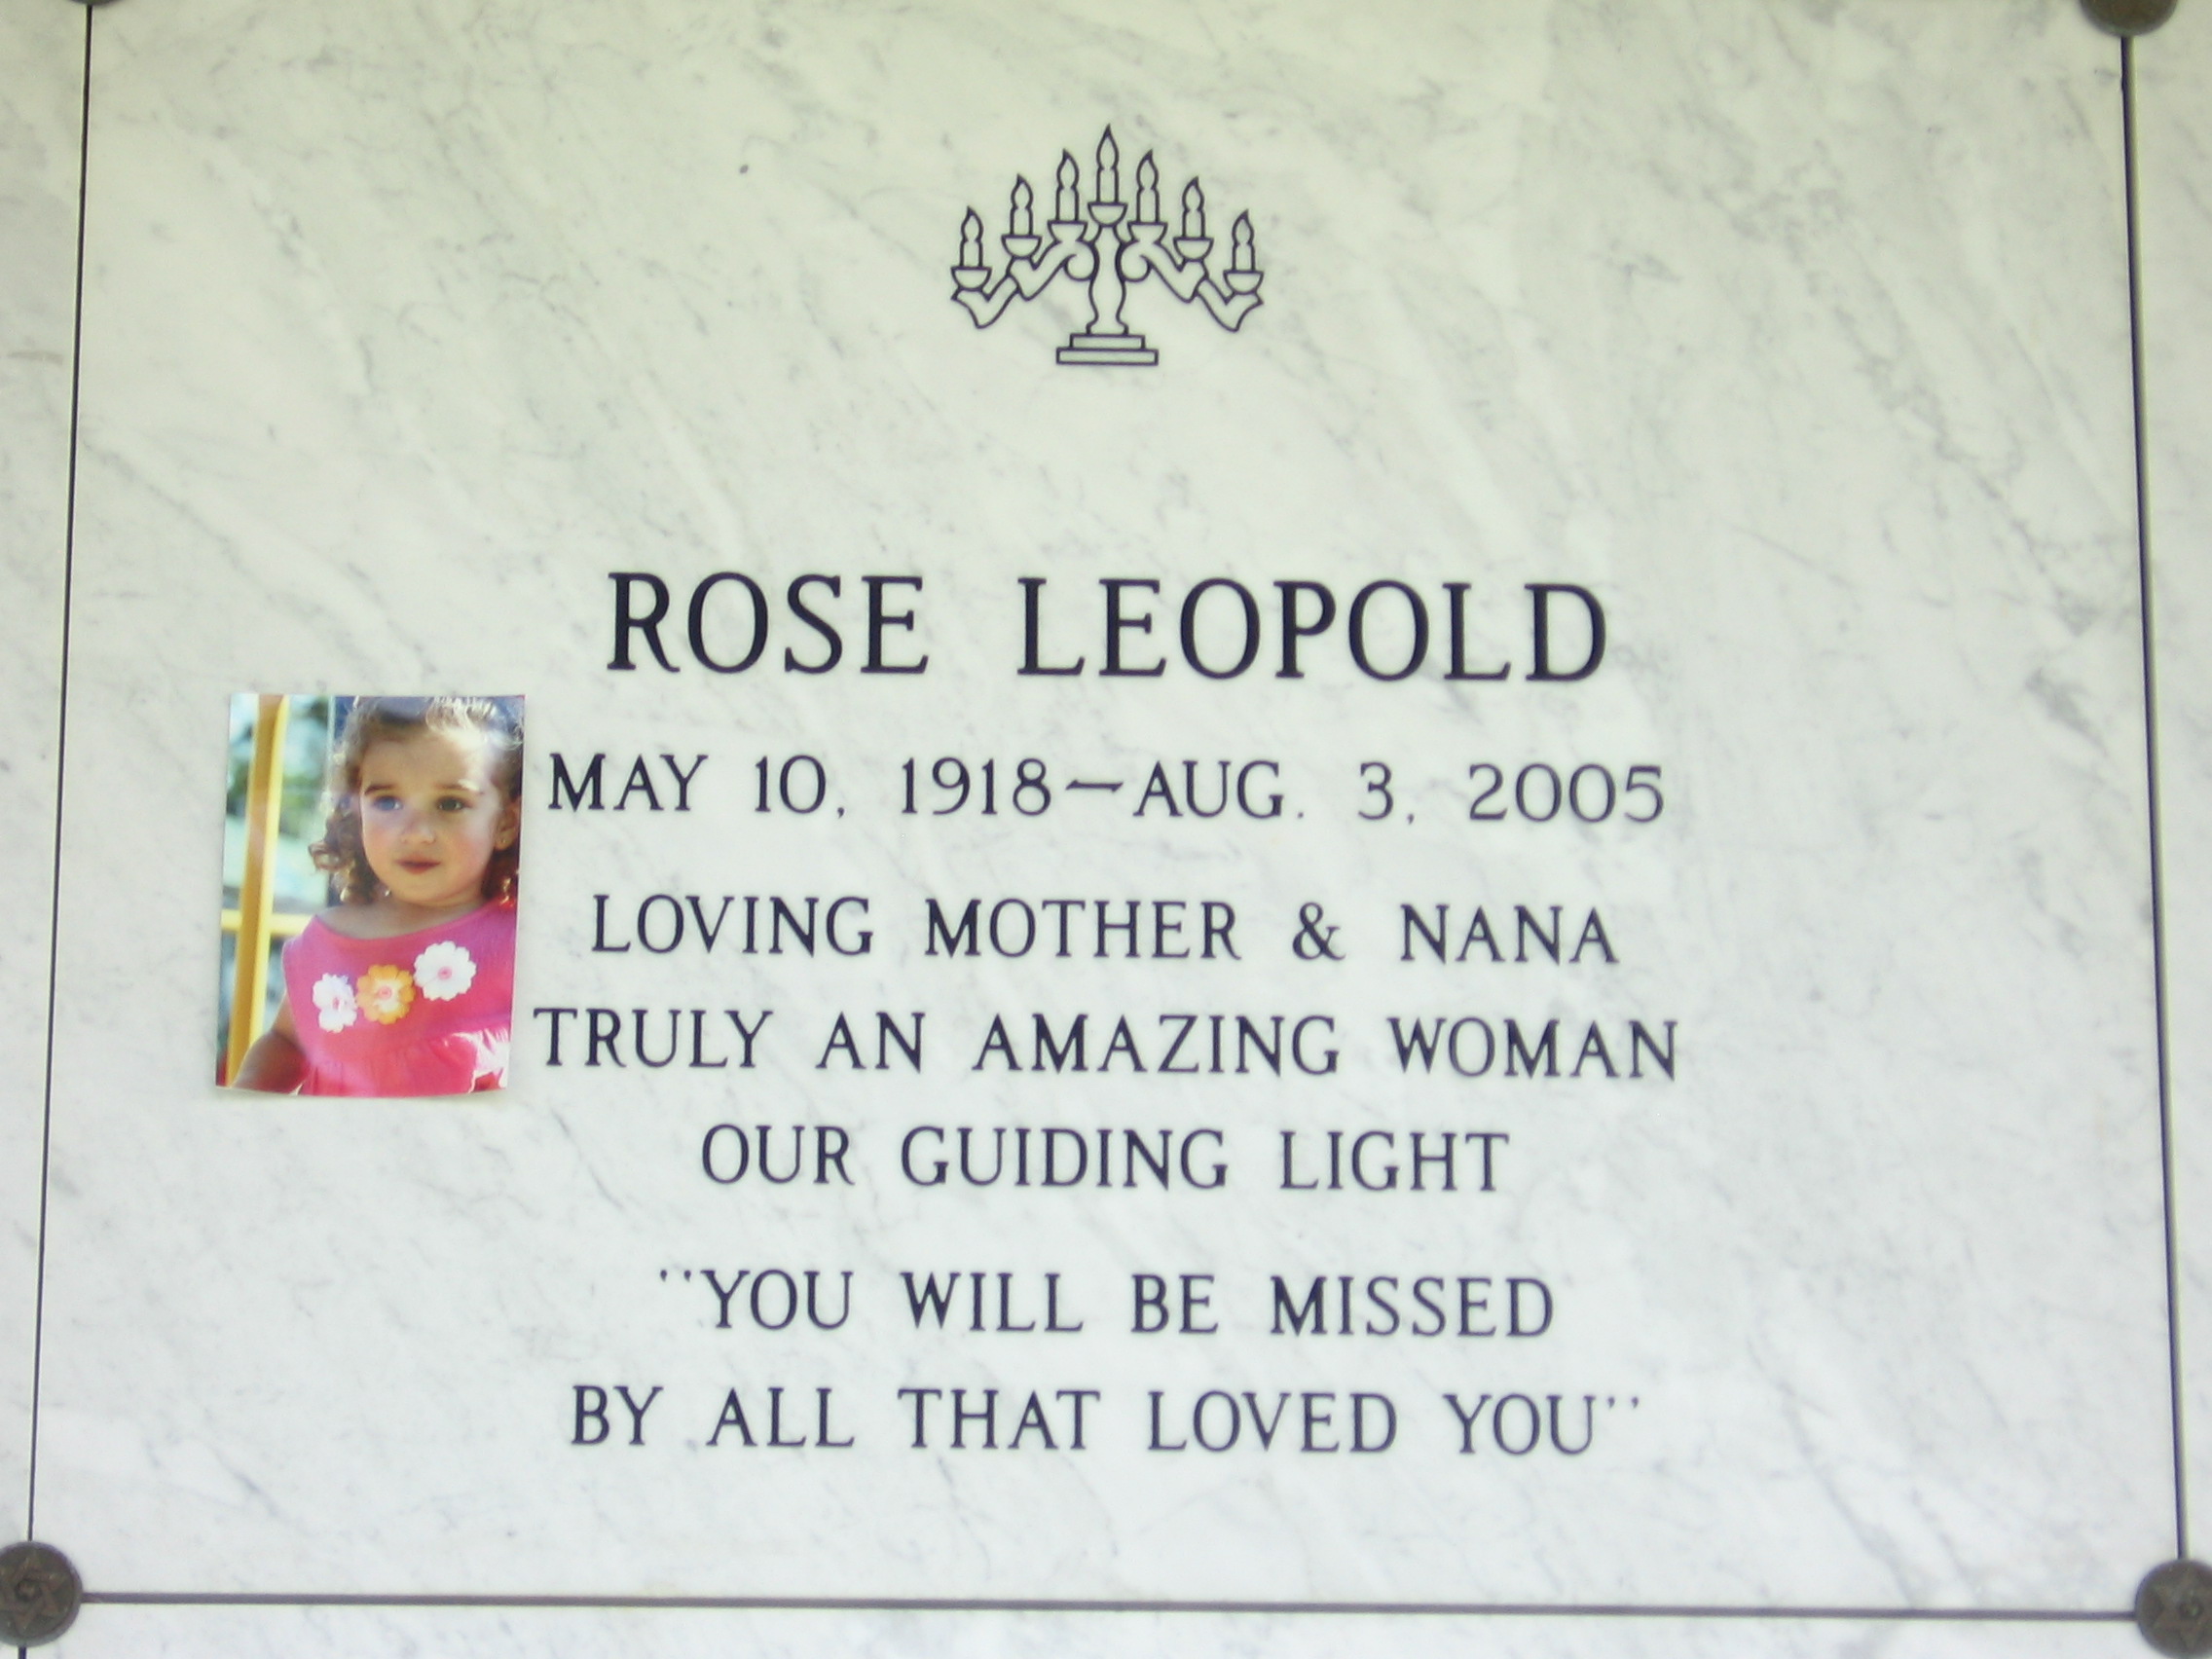 Rose Leopold